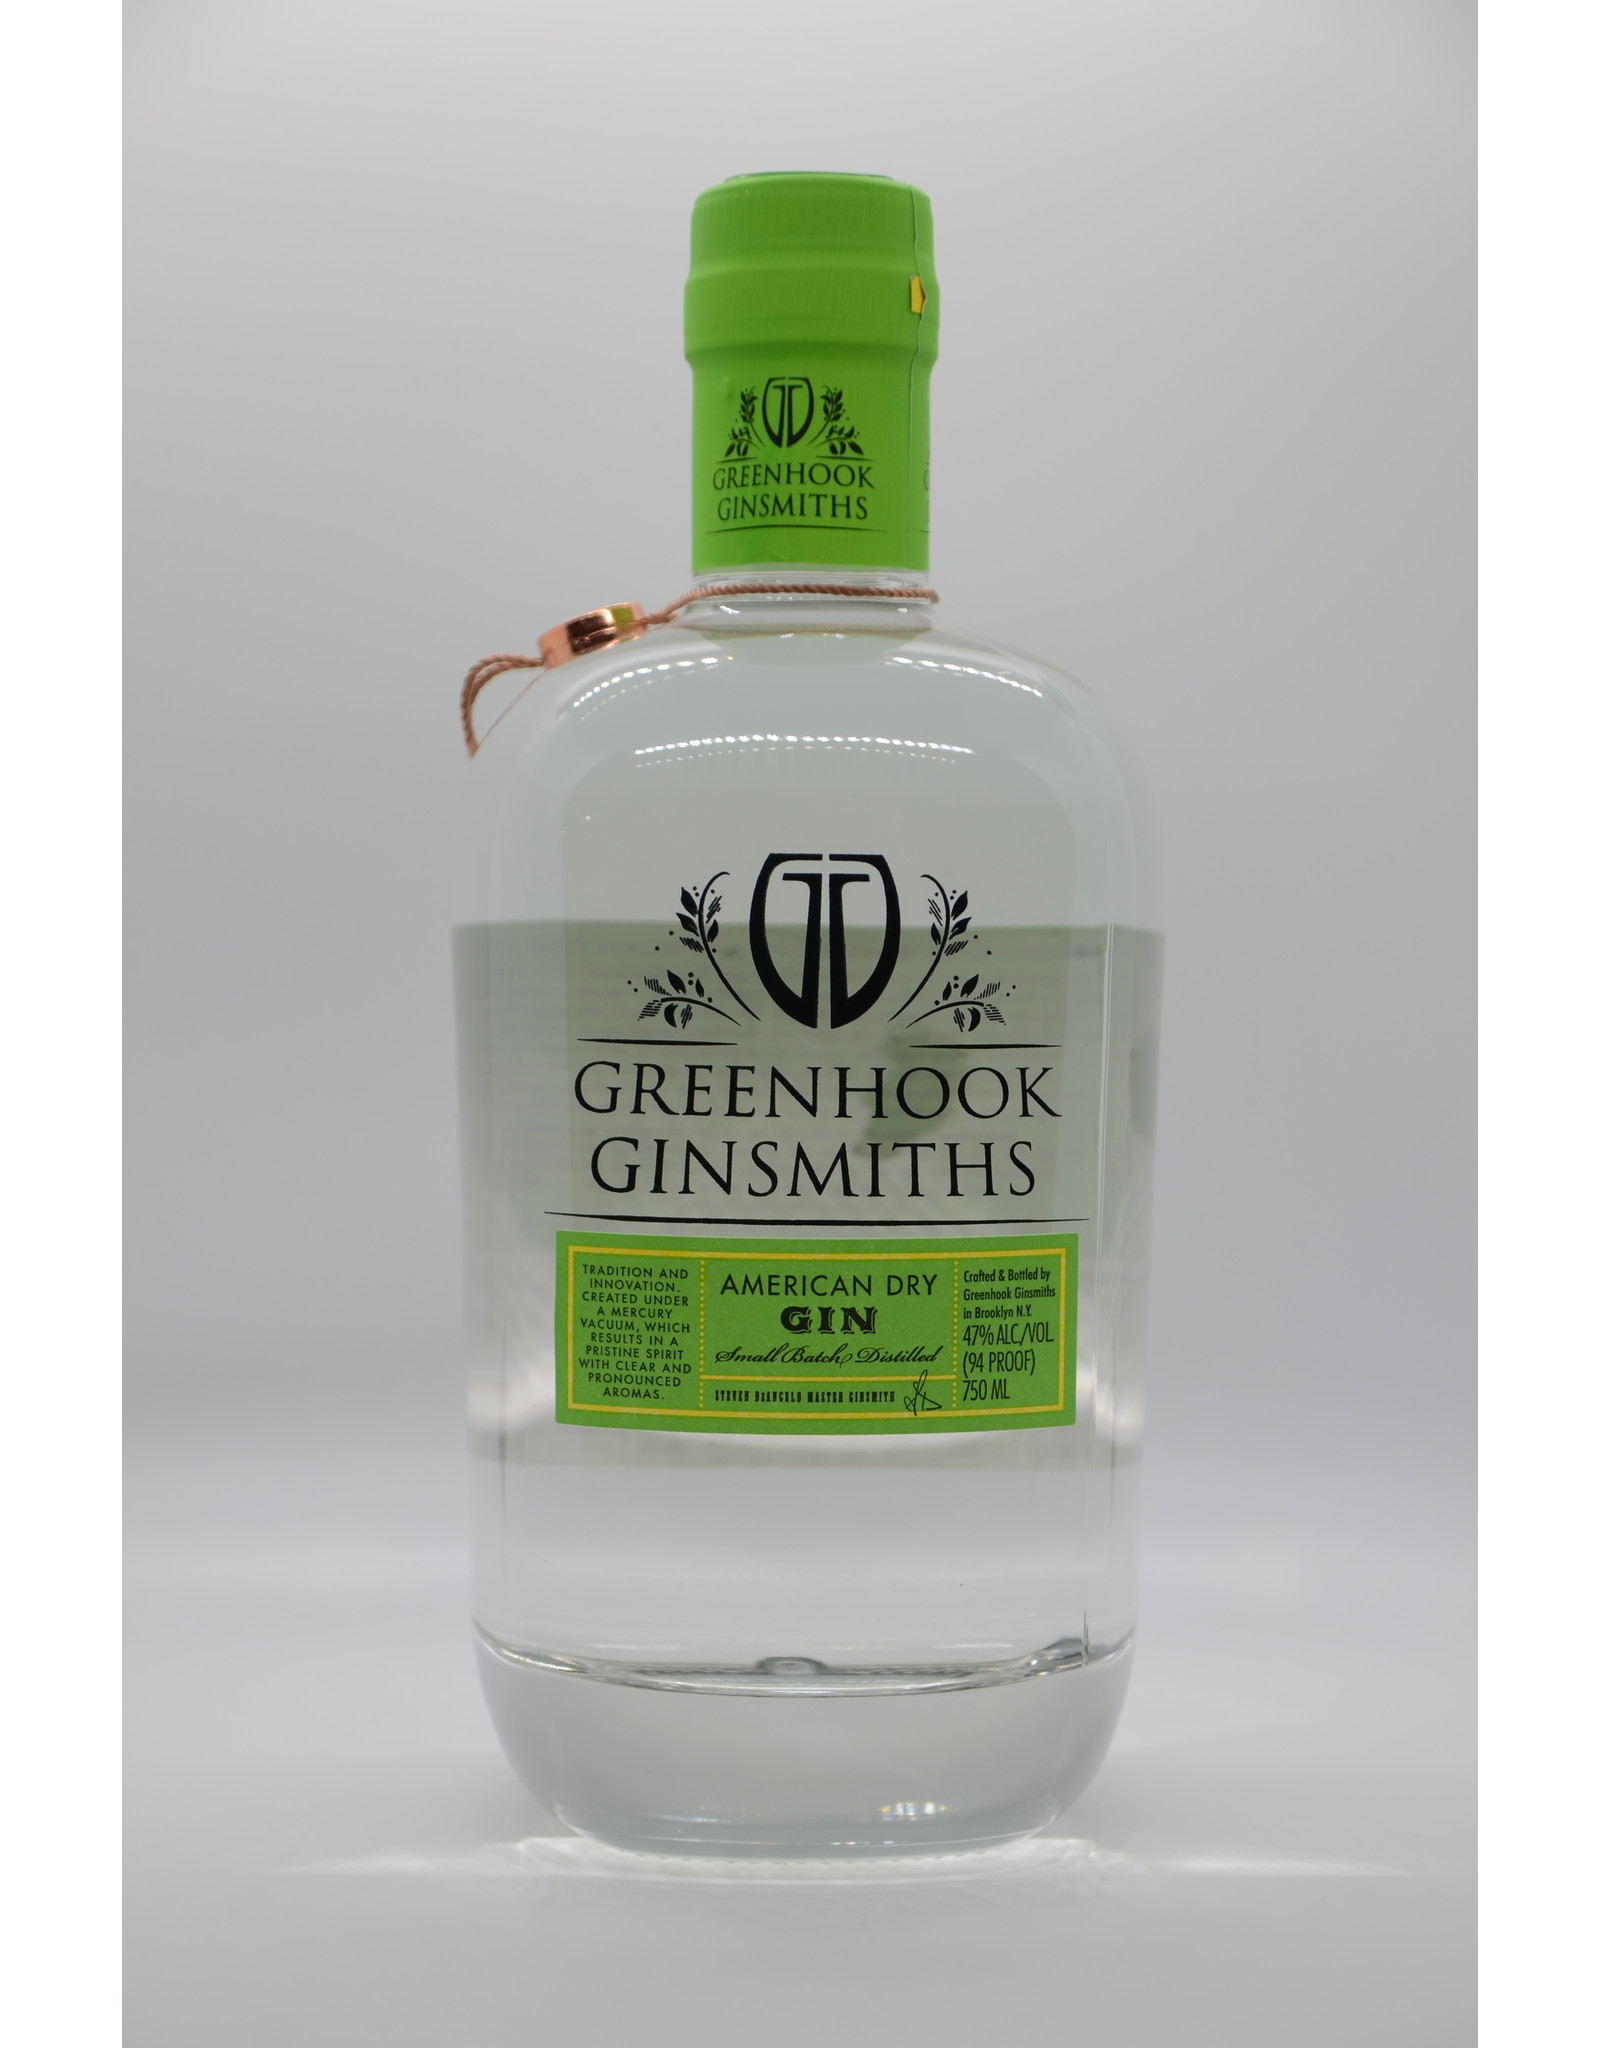 USA Greenhook Ginsmiths Gin